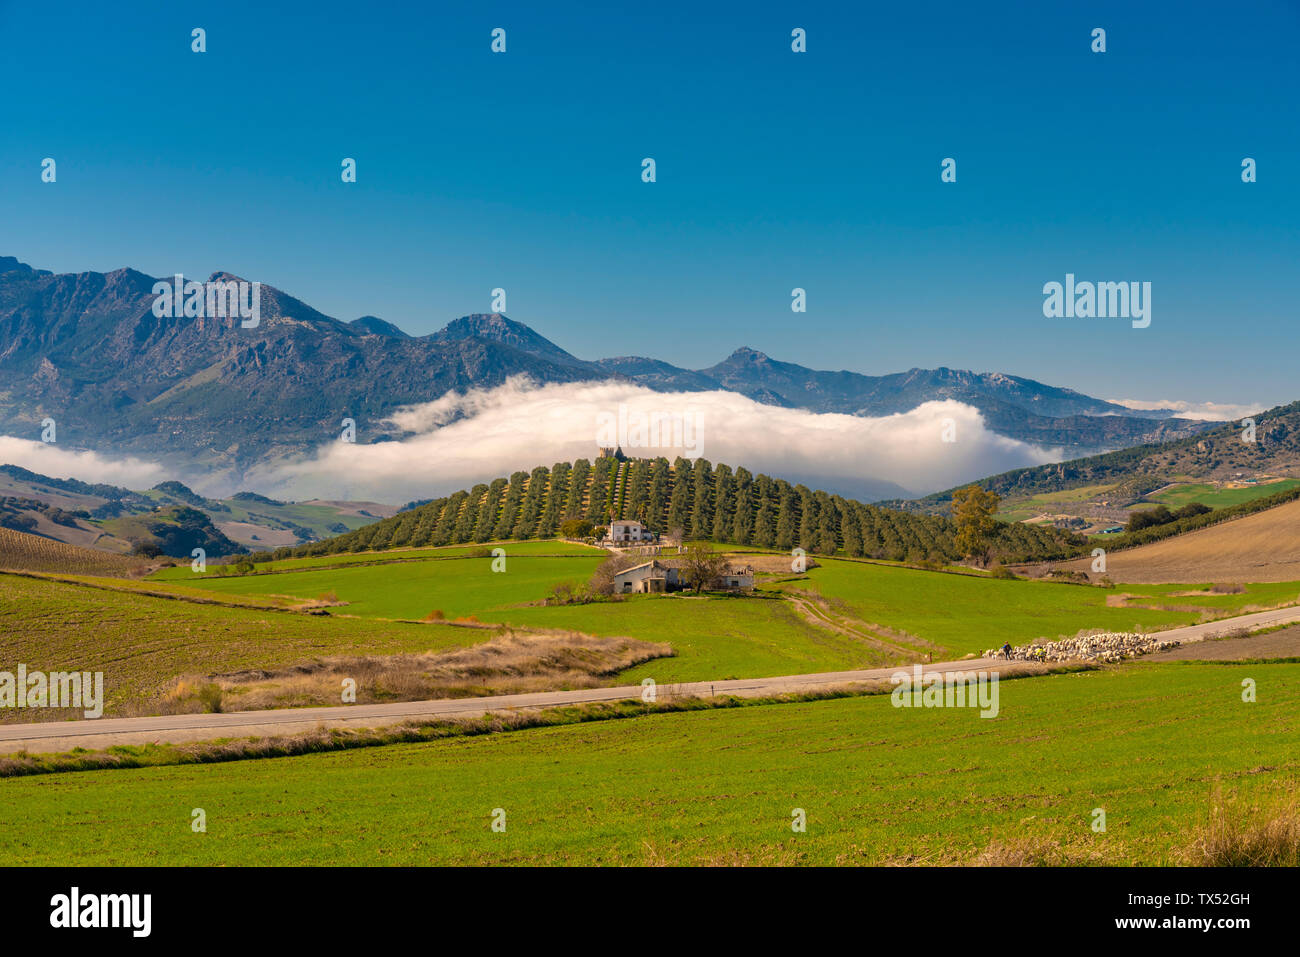 Spagna, Andalusia, provincia di Malaga, Verde paesaggio vicino a Ronda con case coloniche, pecore Foto Stock